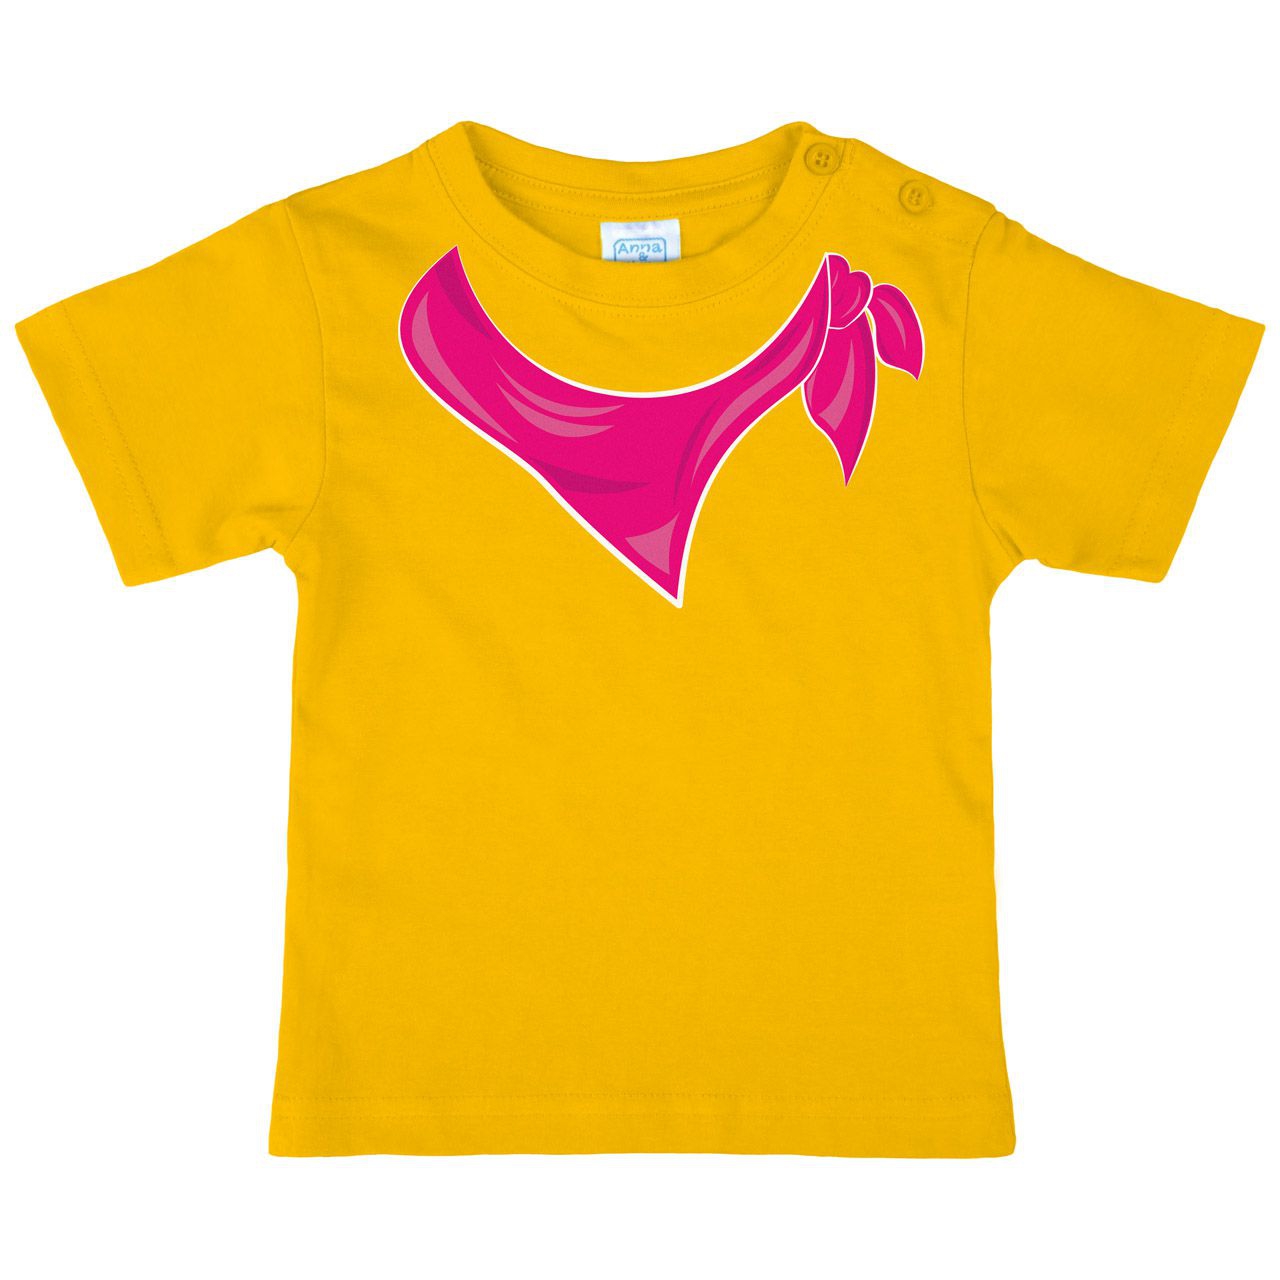 Halstuch pink Mädchen Kinder T-Shirt gelb 68 / 74